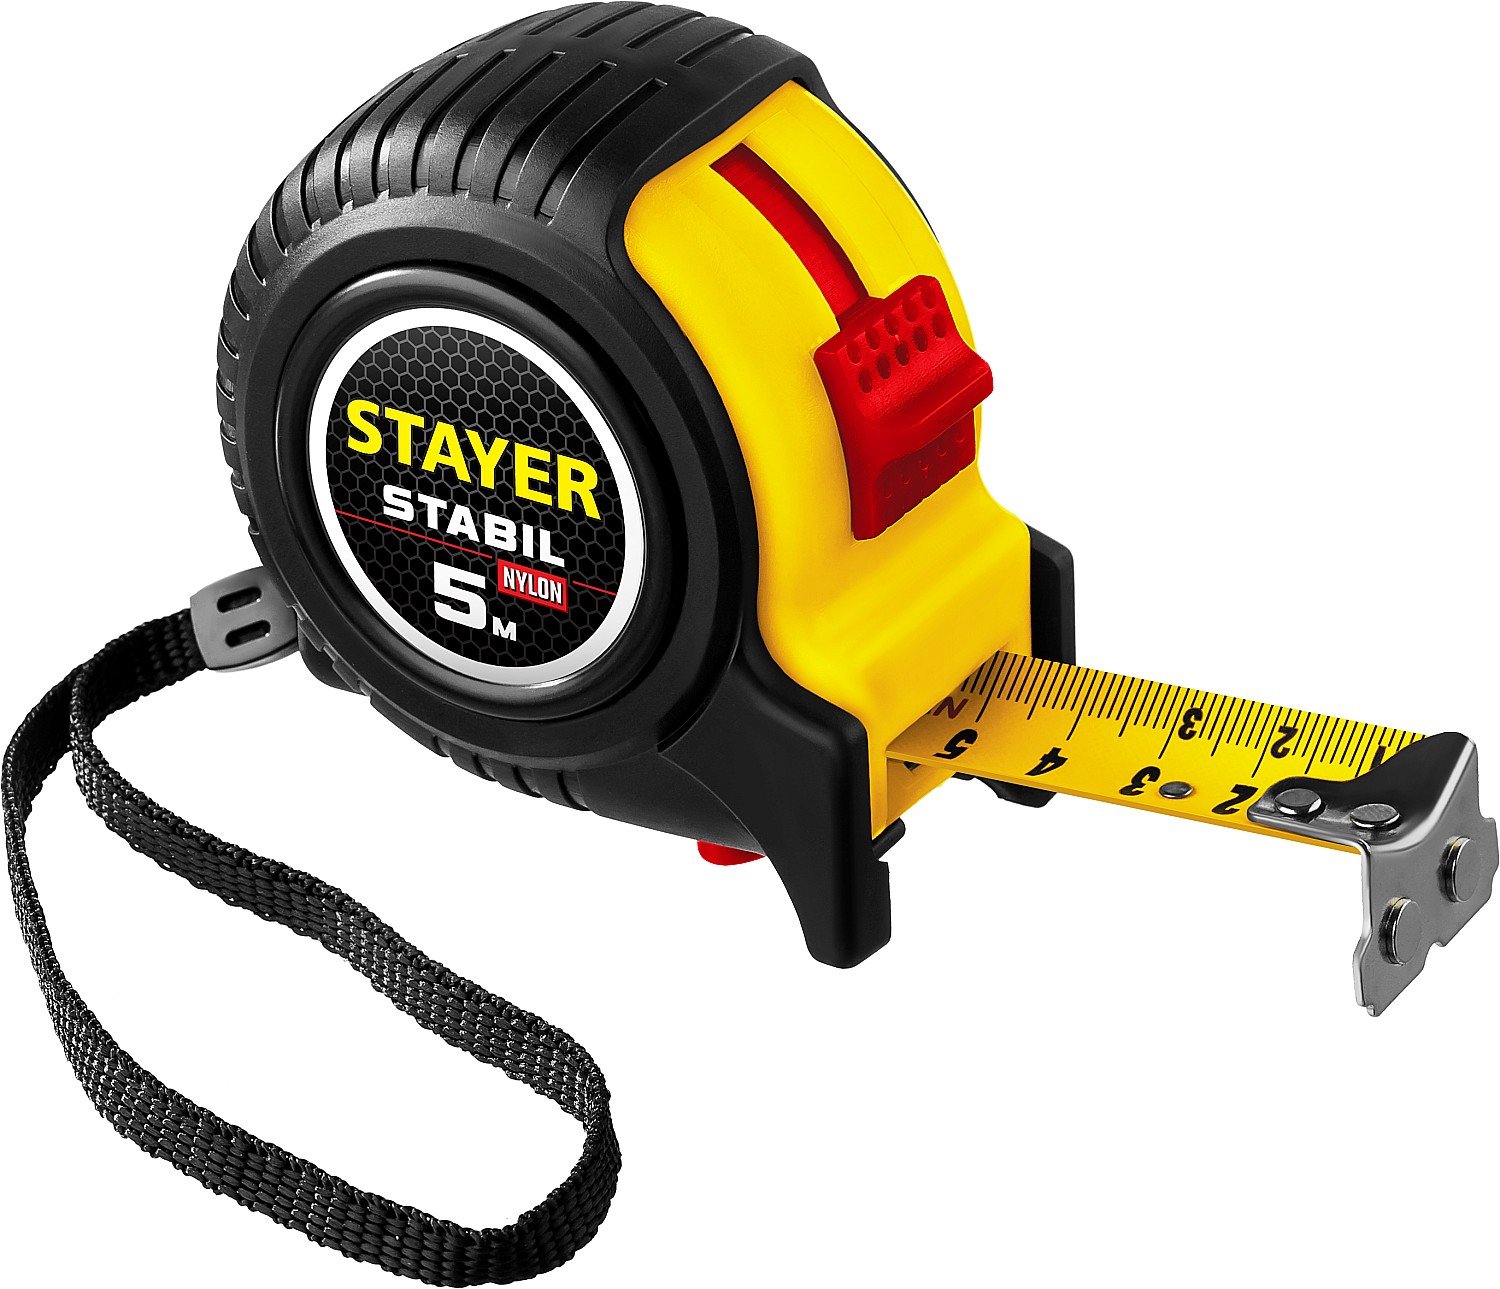 Профессиональная рулетка с двухсторонней шкалой STAYER Stabil 5м х 25мм (34131-05-25_z02)Купить